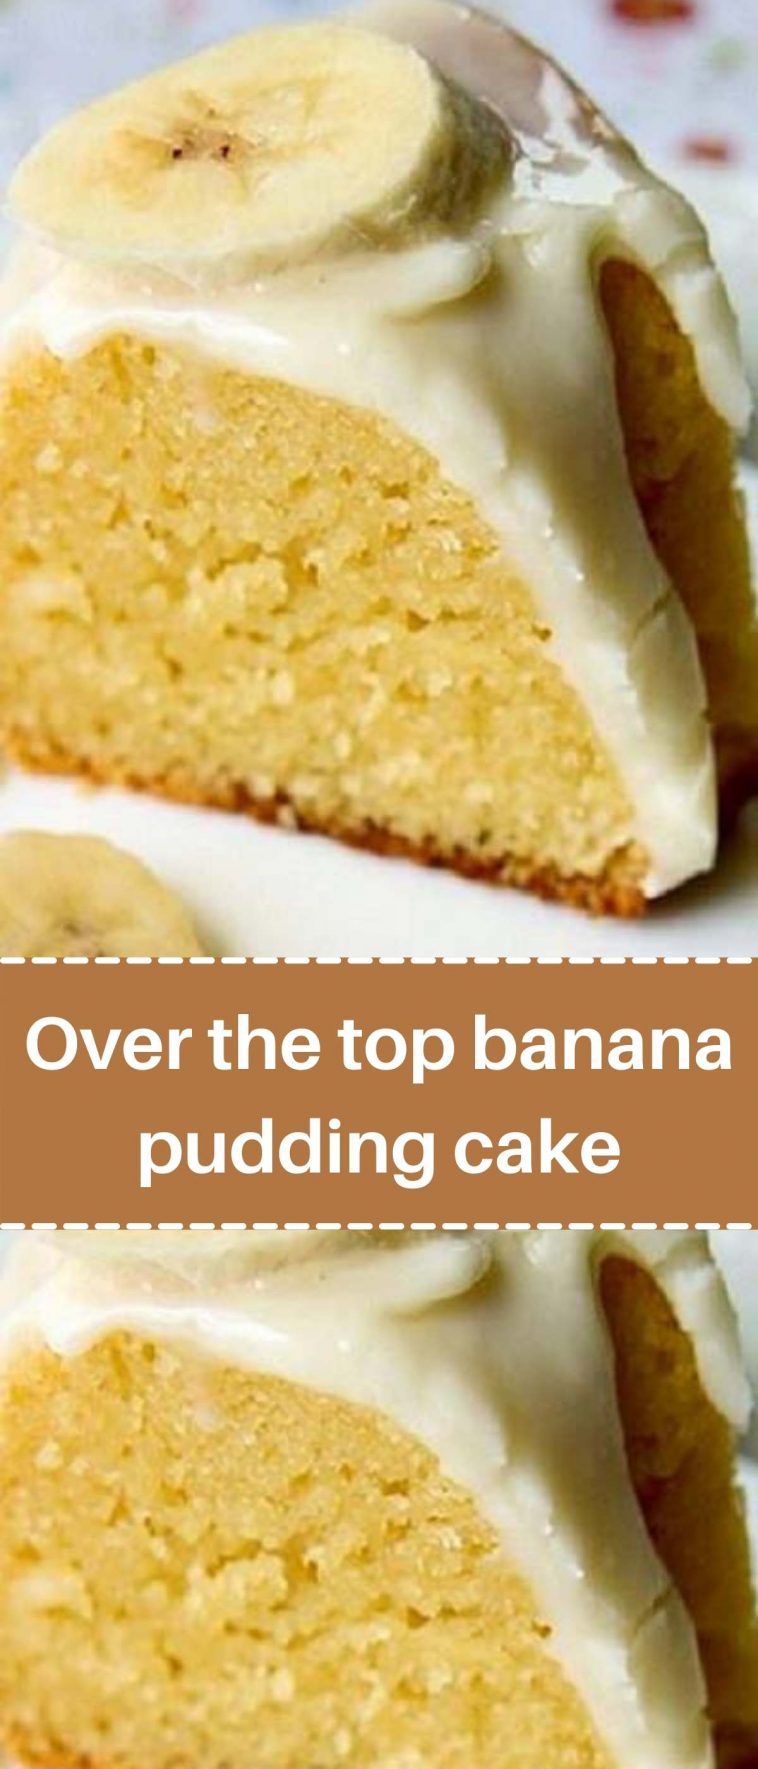 Over the top banana pudding cake